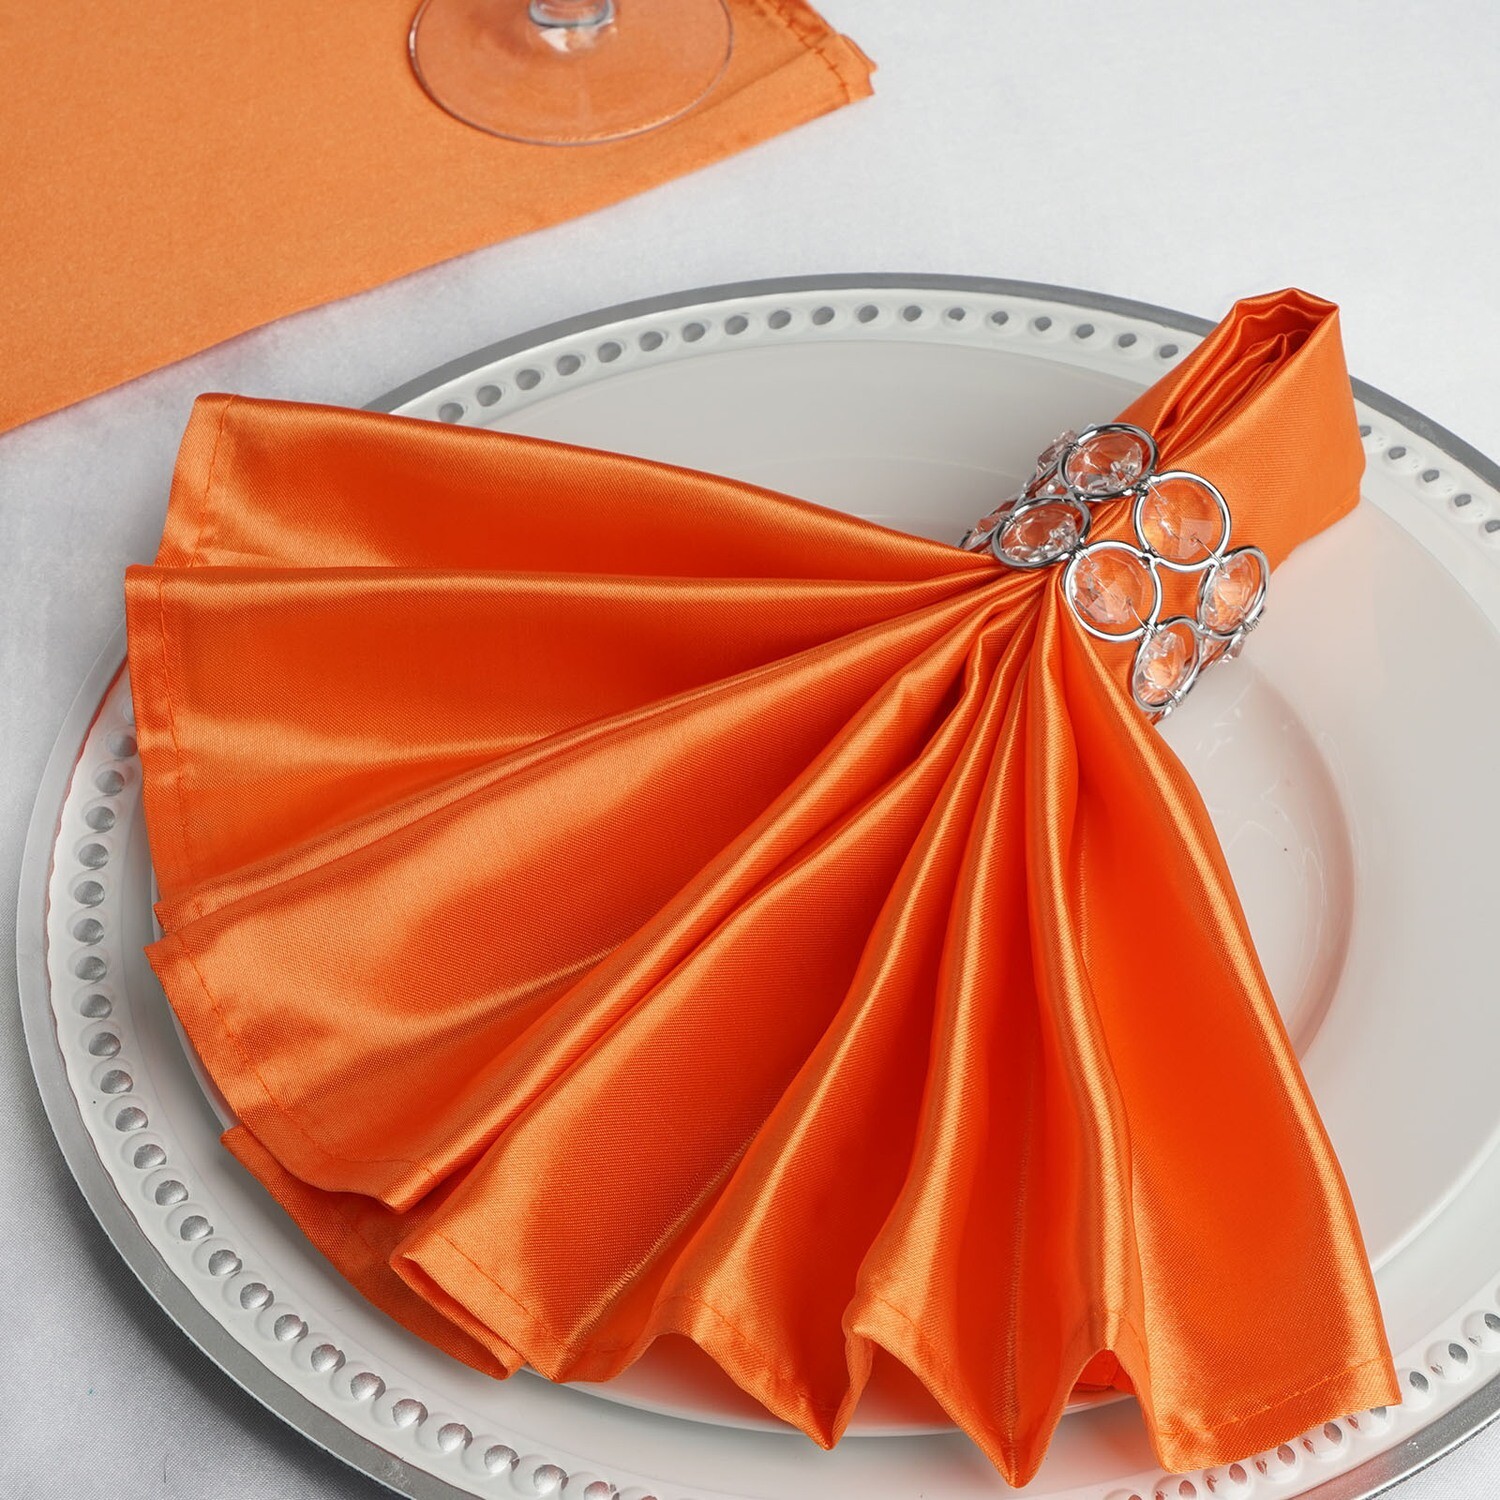 Serviette de table satin de soie, couleur orange pêche 50x50 cm